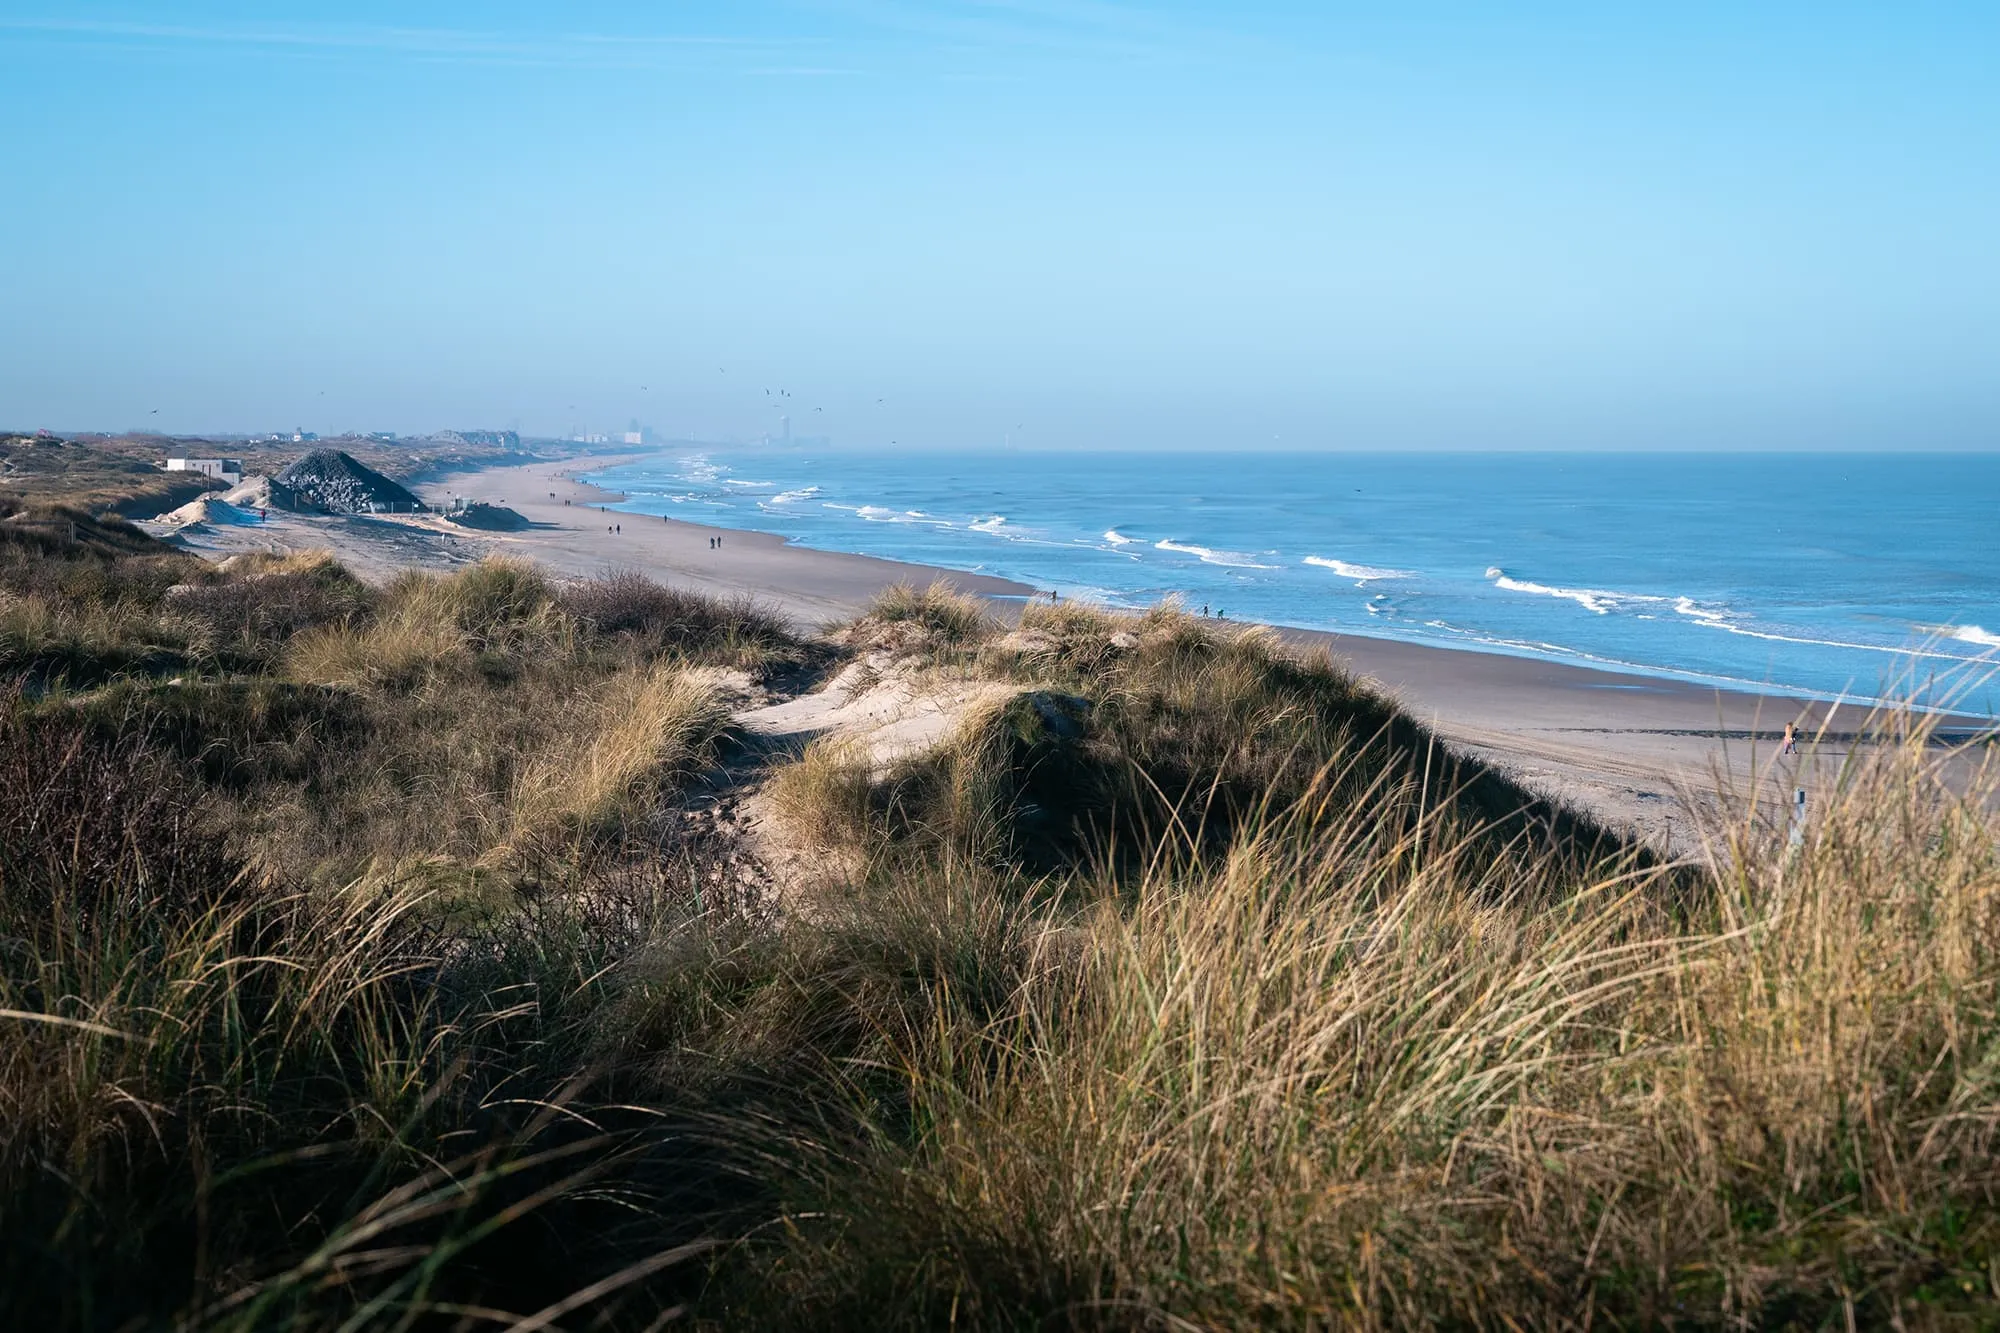 La plage de De Haan, la plus grande du littoral belge